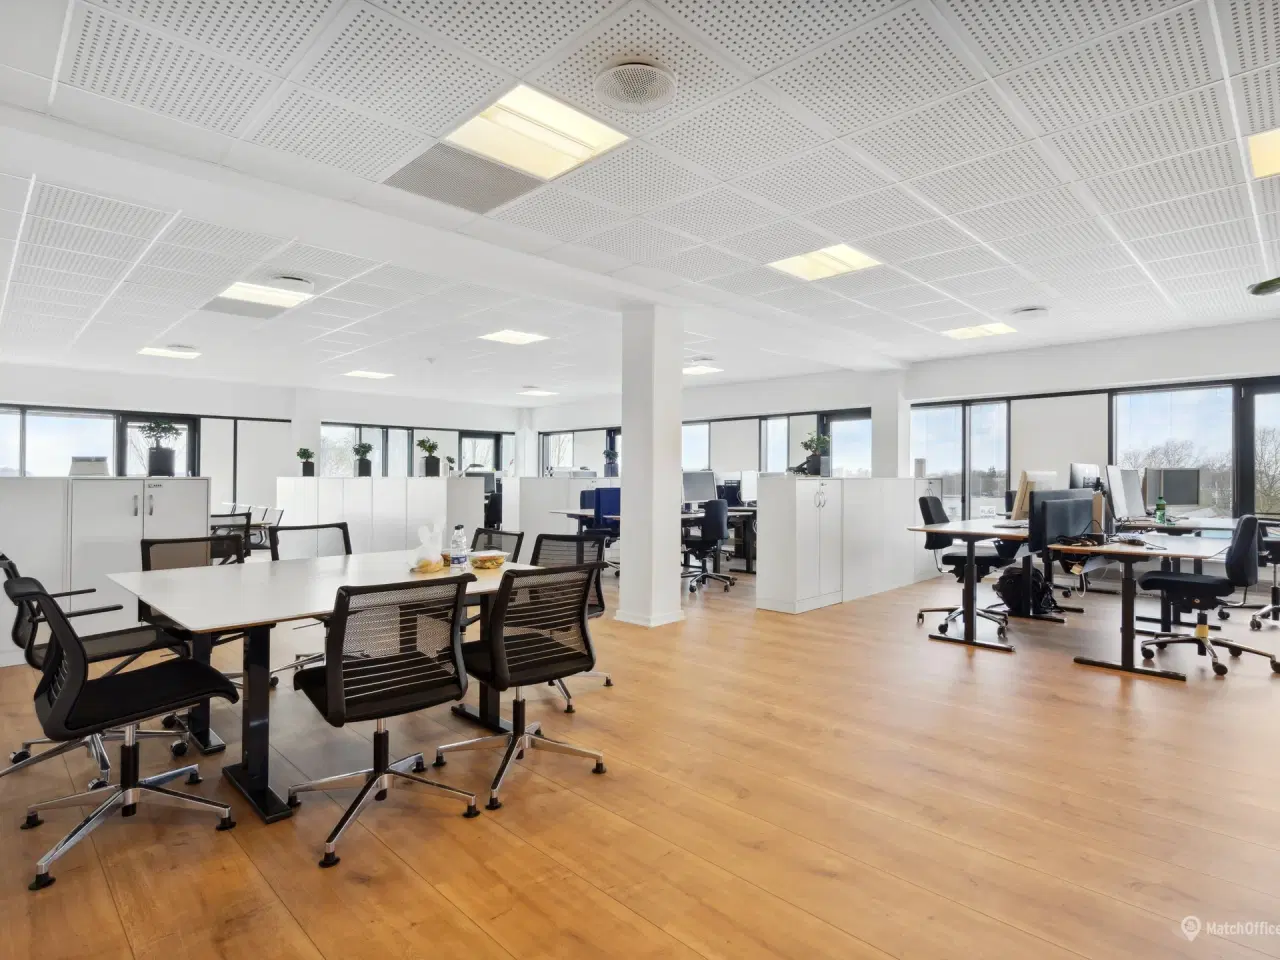 Billede 4 - 342 m² kontor beliggende i meget præsentabel kontorejendom